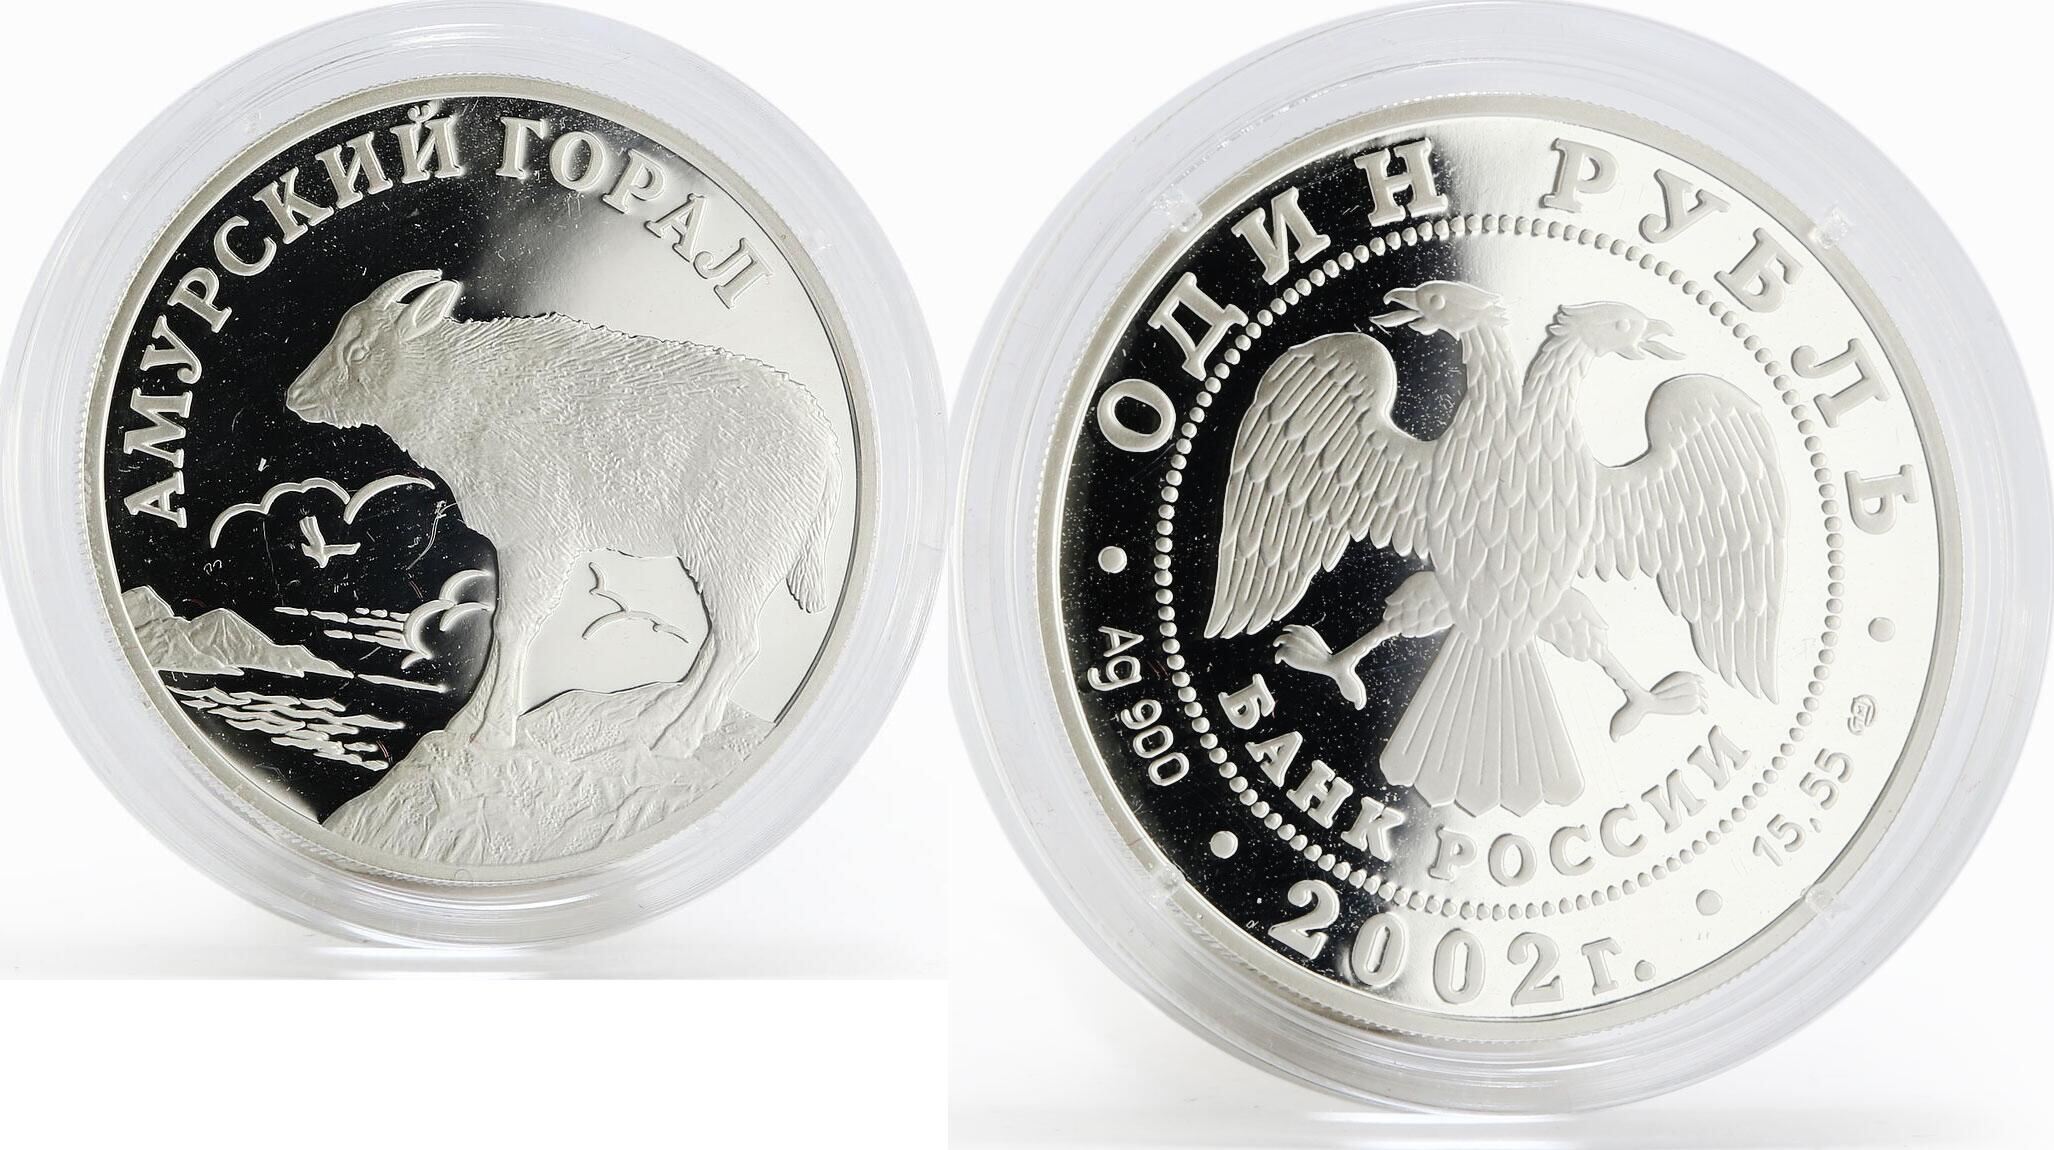 3 рубля урал. Монета серебро Пеликан. Серебряные монеты 1 рубль Австралии. Гвина монета серебро. Брат 25 монеты серебро.